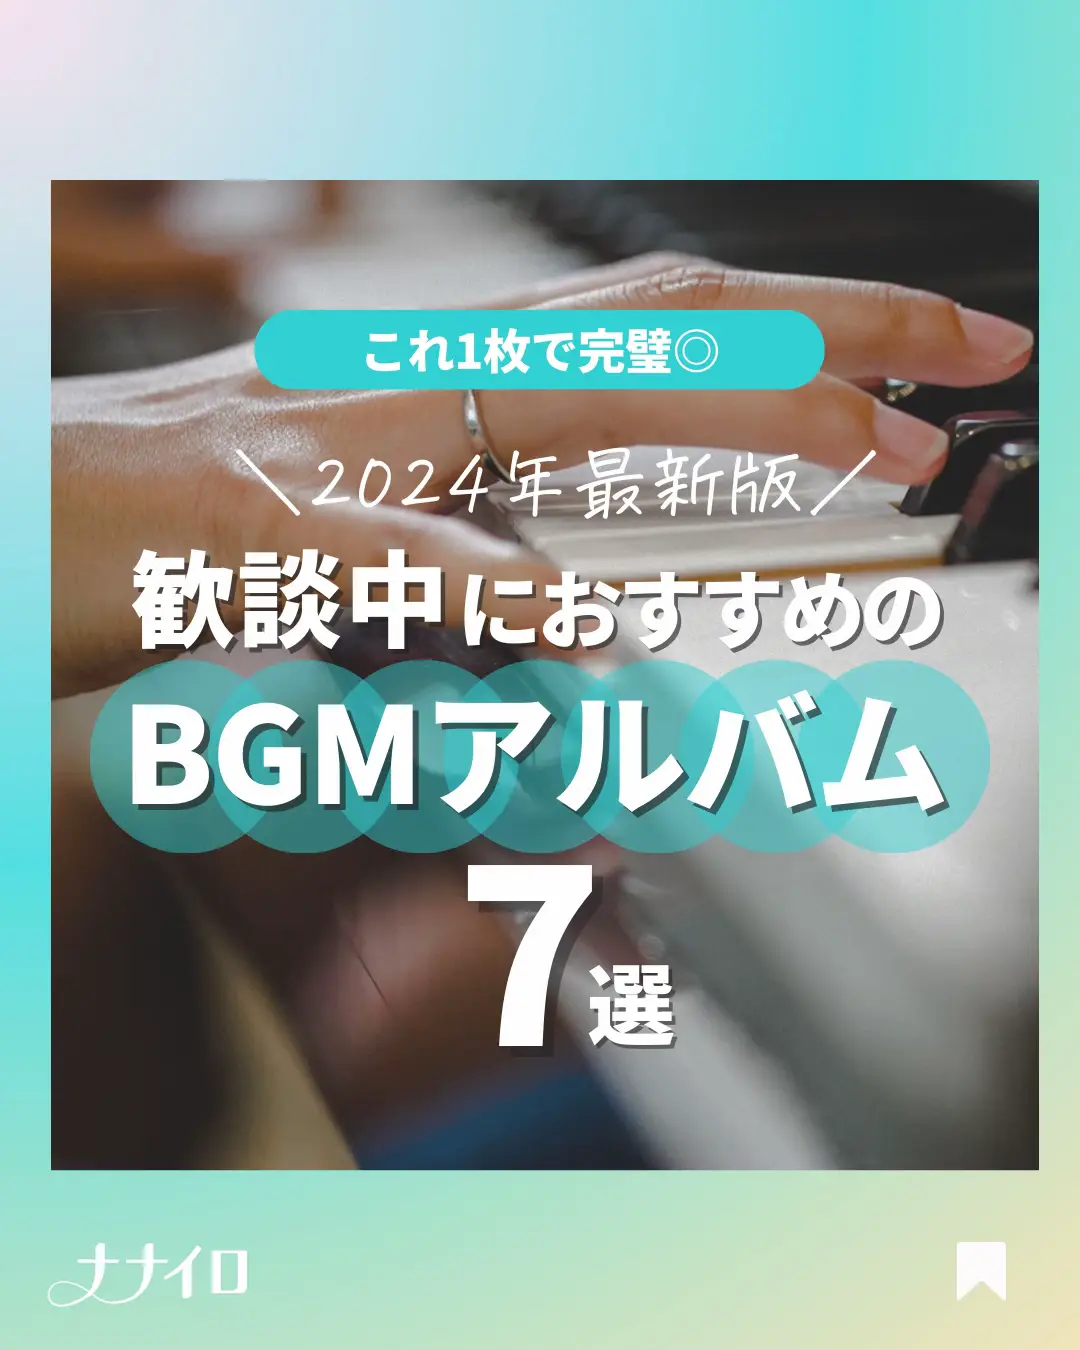 開封 Bgm - Lemon8検索